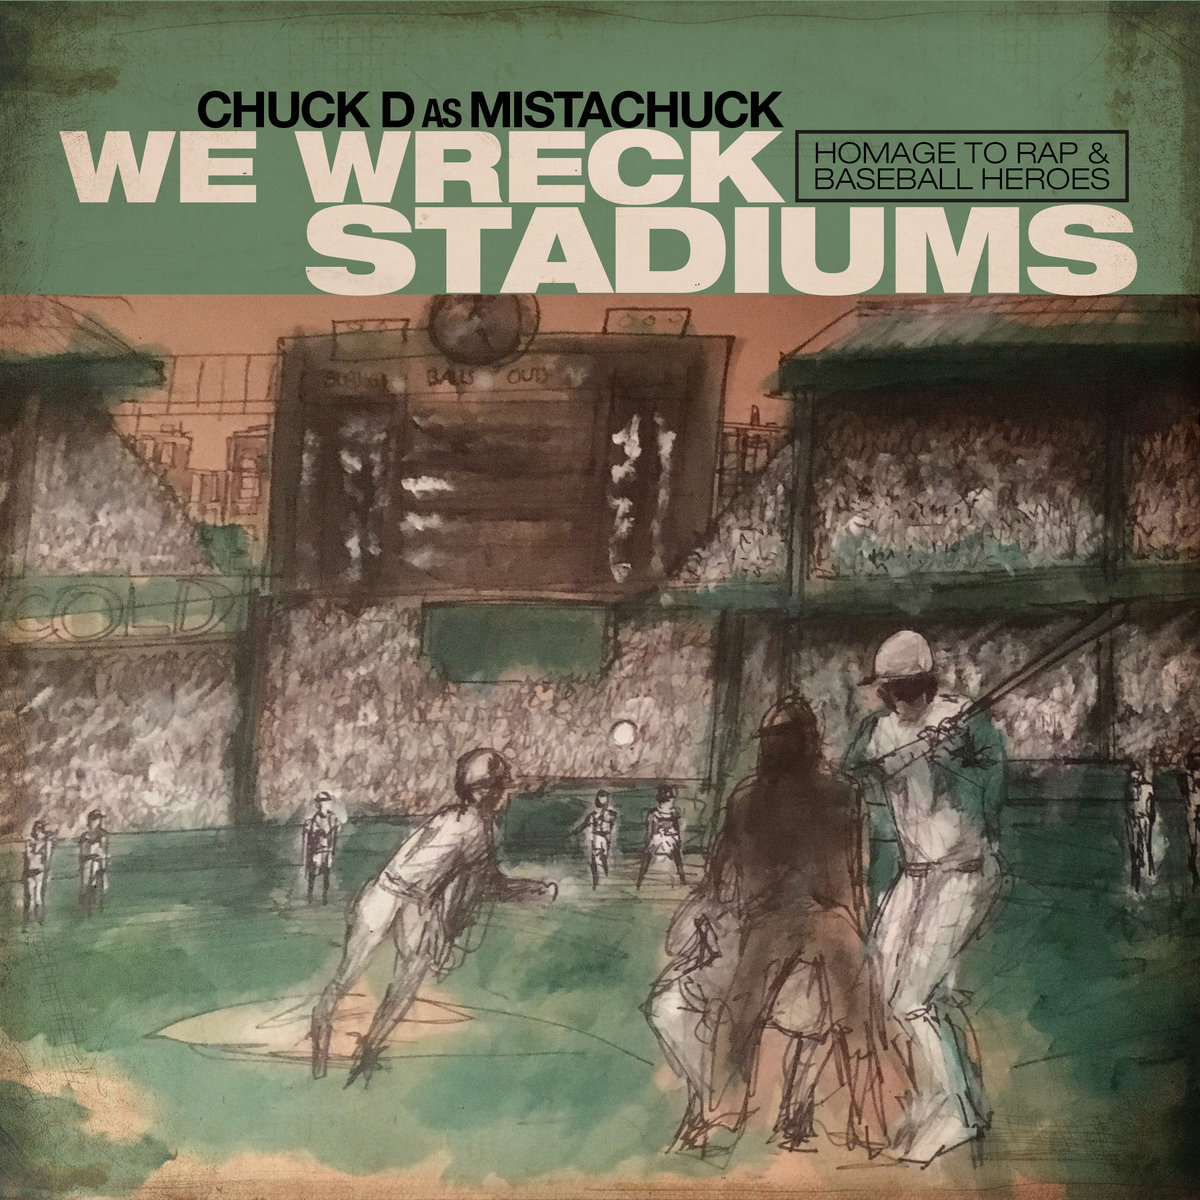 We_wreck_stadiums_chuck_d